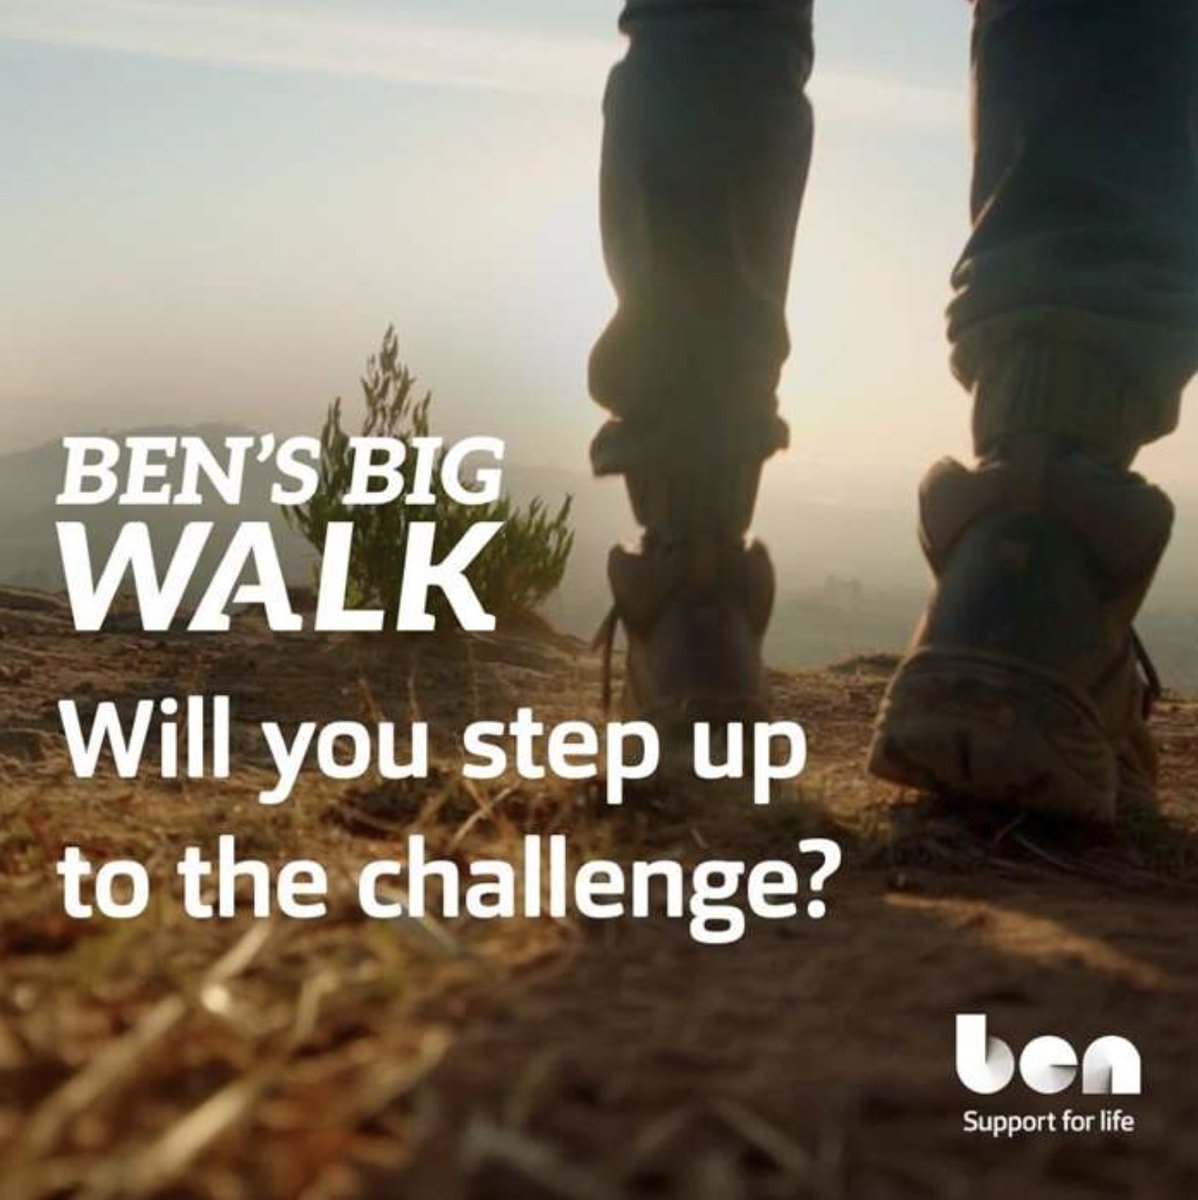 Step forward to register for Ben’s September Big Walk - aftermarketonline.net/step-forward-t…